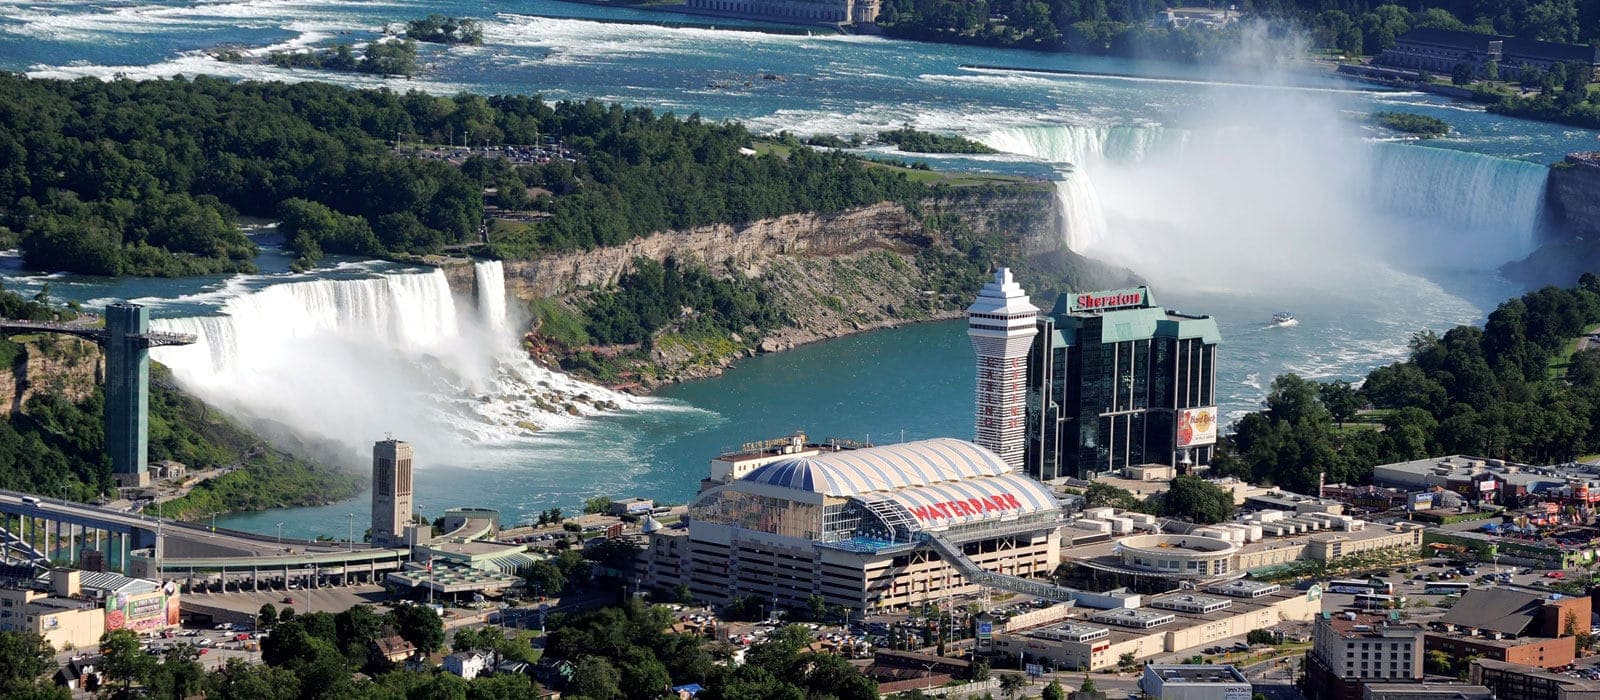 Niagara Falls Hotels Room Deals Special Offers Falls Avenue Resort